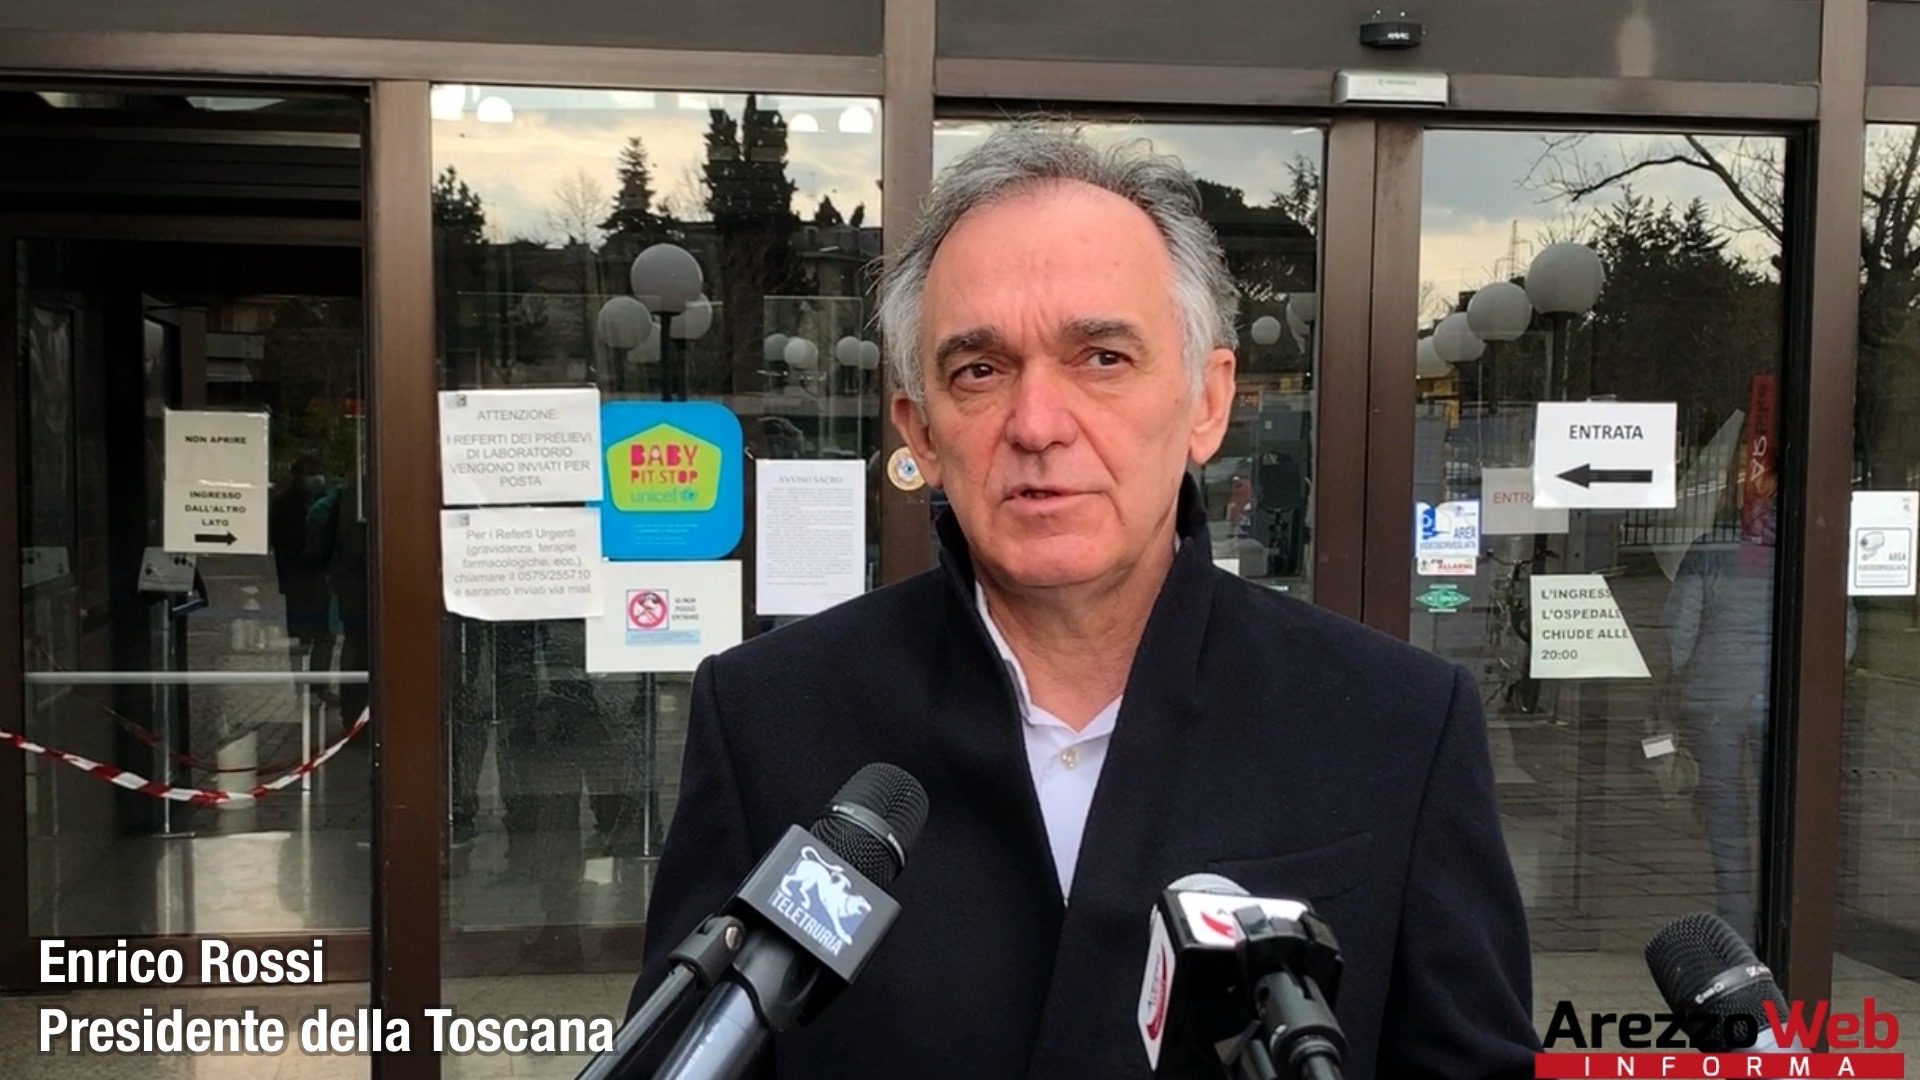 Sblocco grandi opere, Rossi: “La Toscana è pronta, che sia una svolta storica”